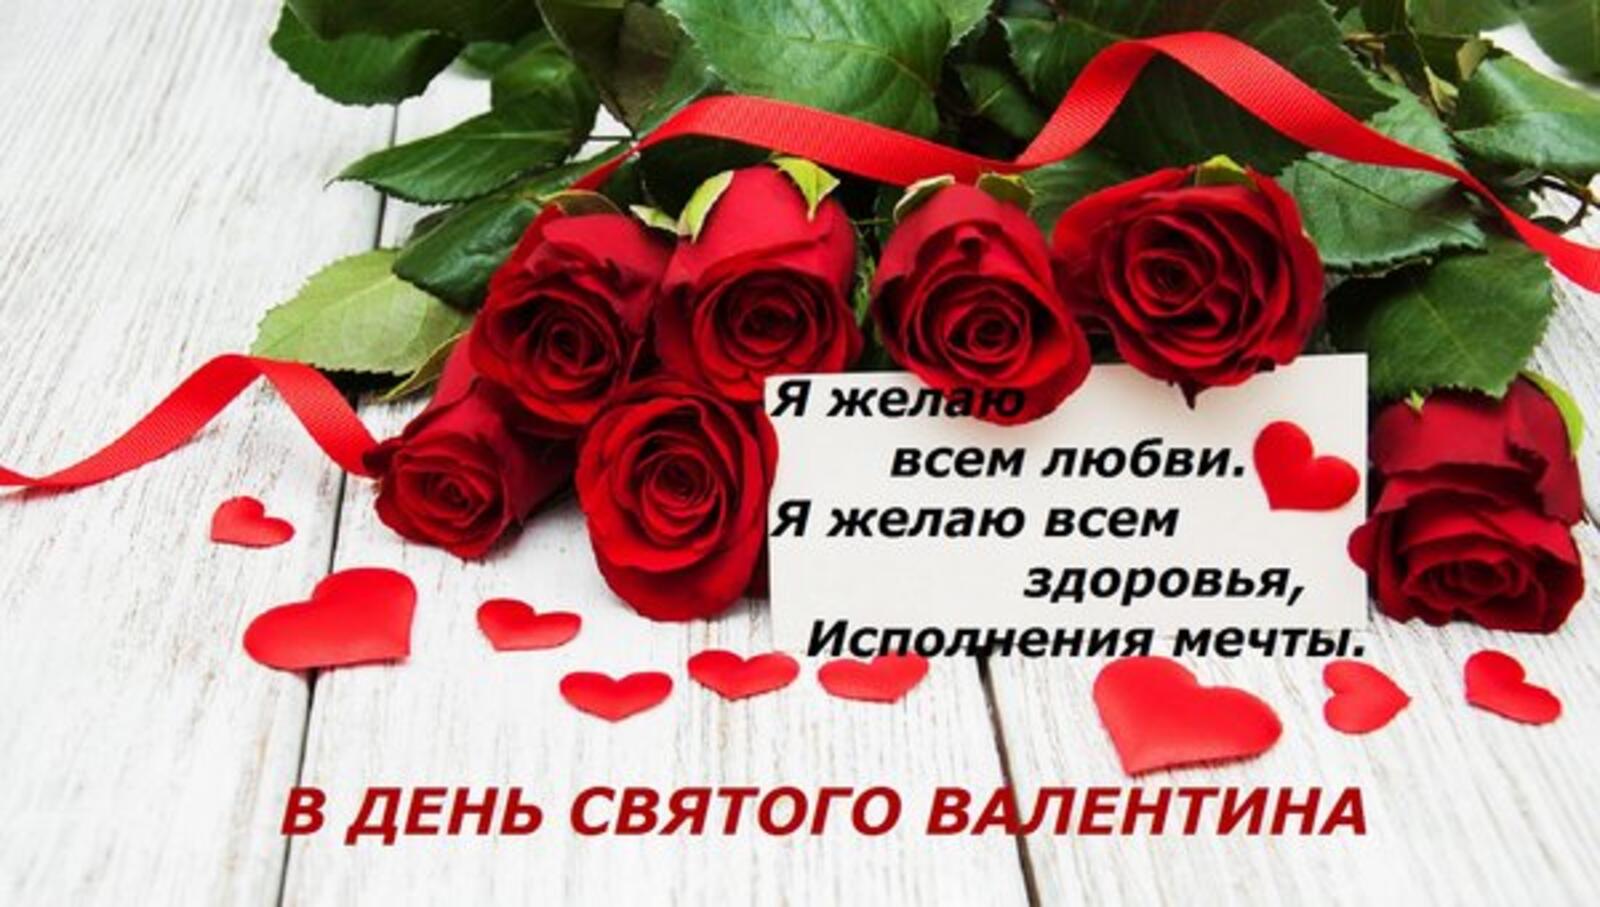 一张以情人节 爱的日子 玫瑰花束为主题的明信片